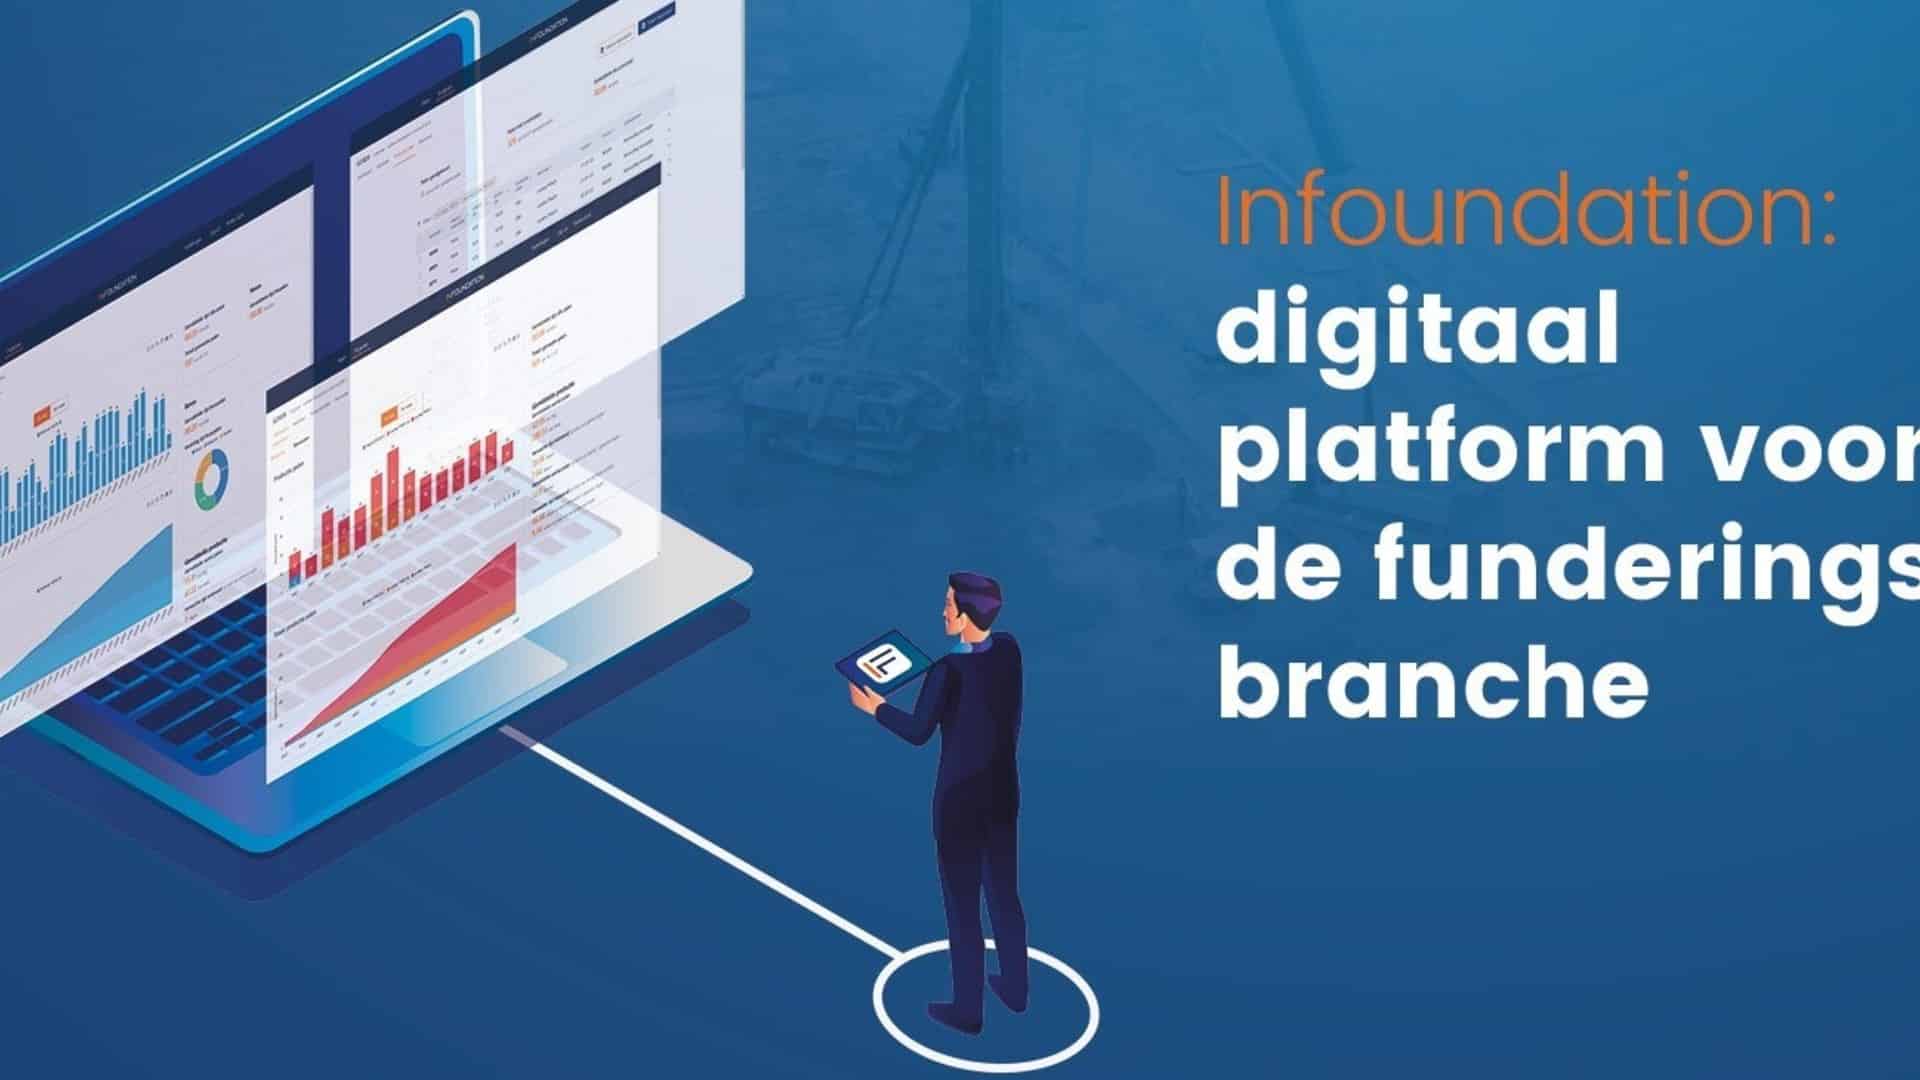 Infoundation: digital platform for the foundation industry